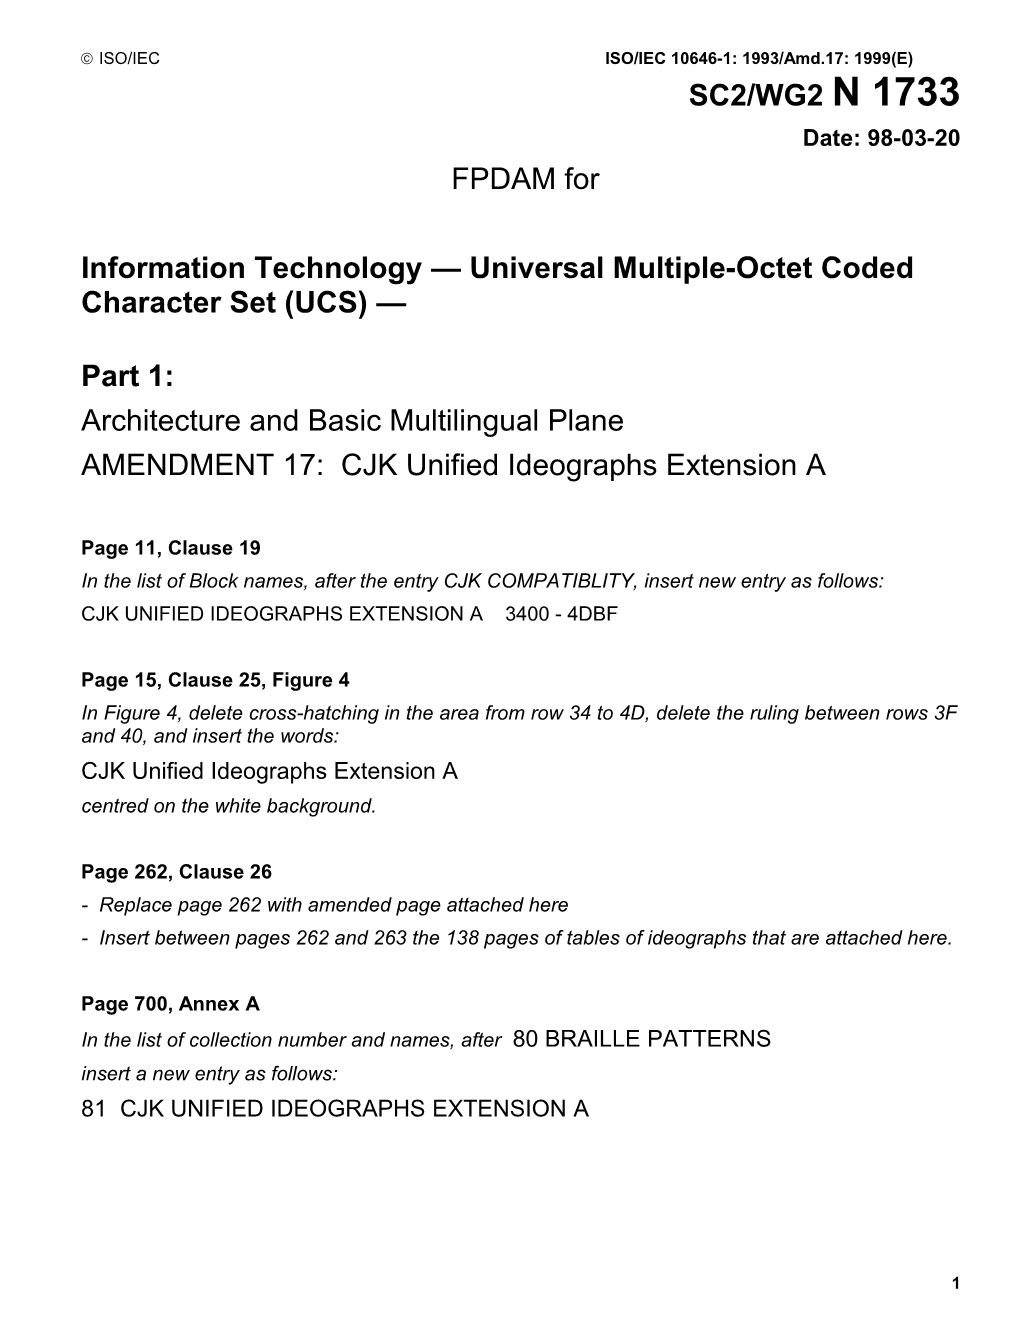 Draft Amendment No.9 to ISO/IEC 10646-1:1 1993 (E)